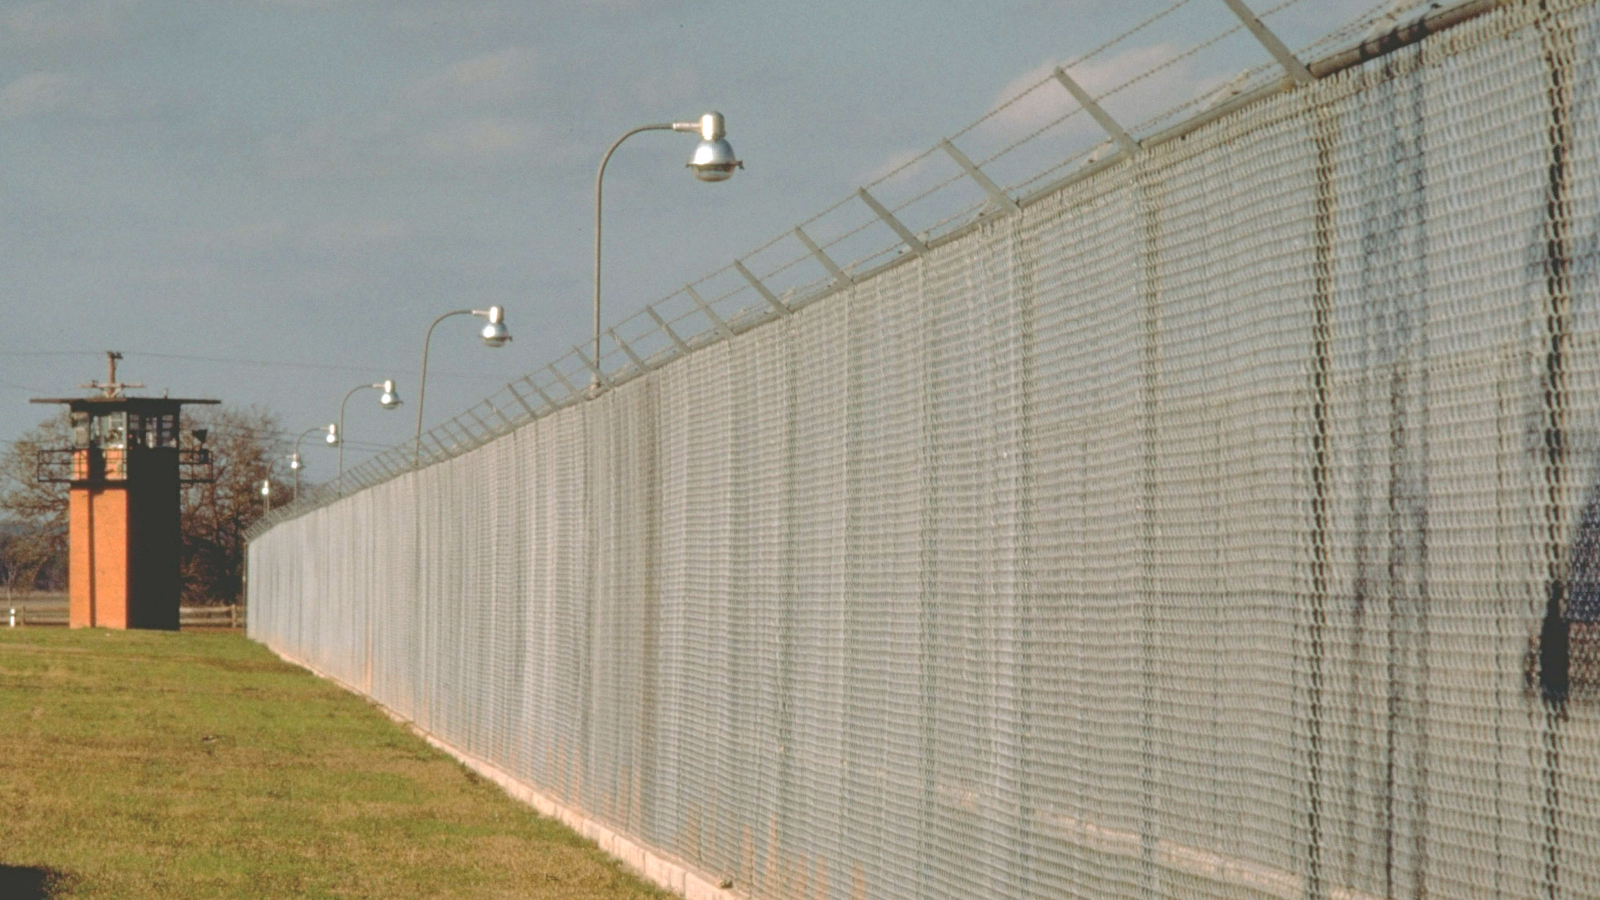 The Ellis maximum security prison in Texas